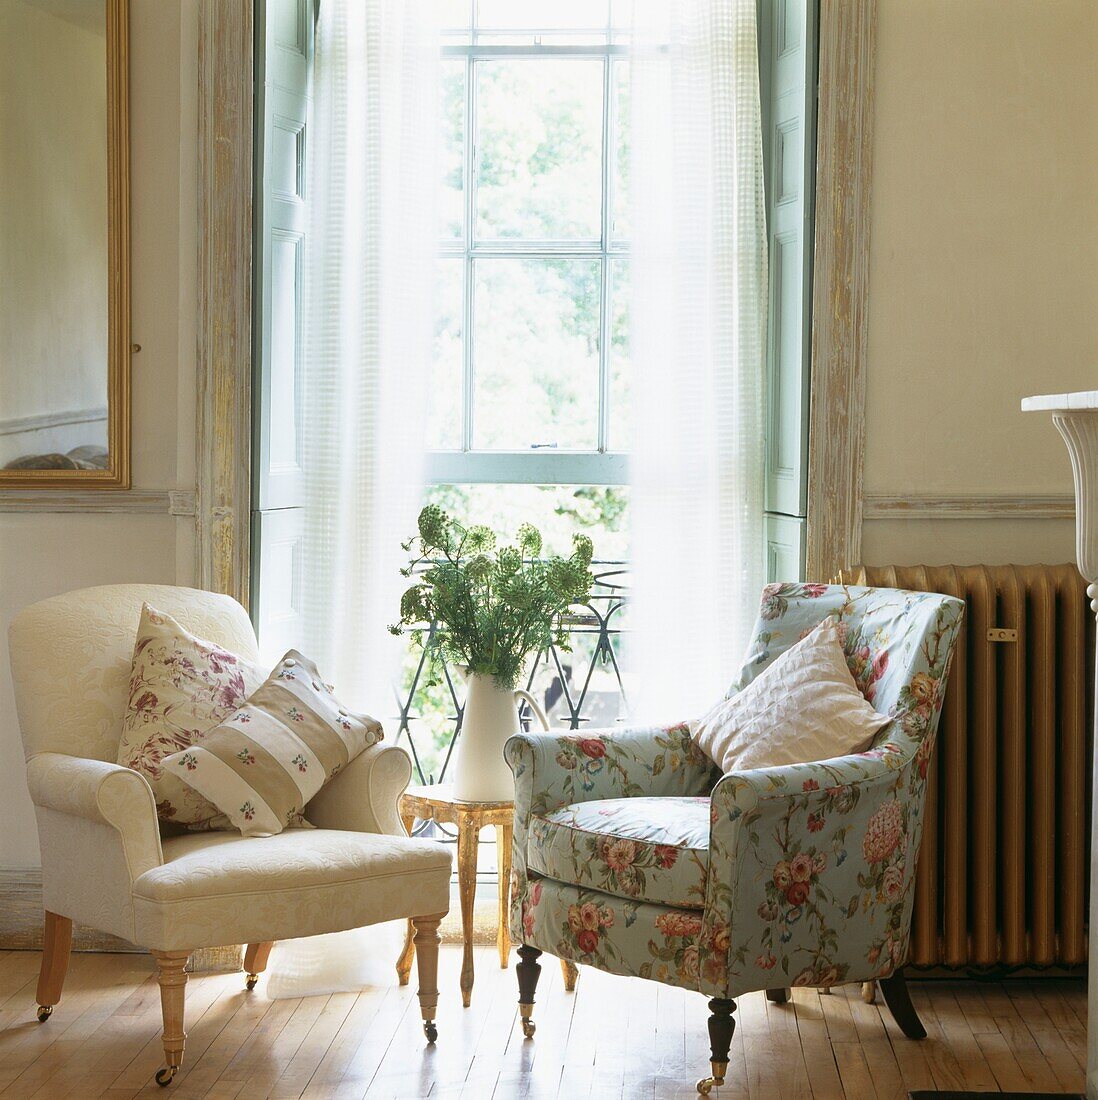 Sessel mit kontrastierenden Stoffen am offenen Fenster mit Farn-Arrangement